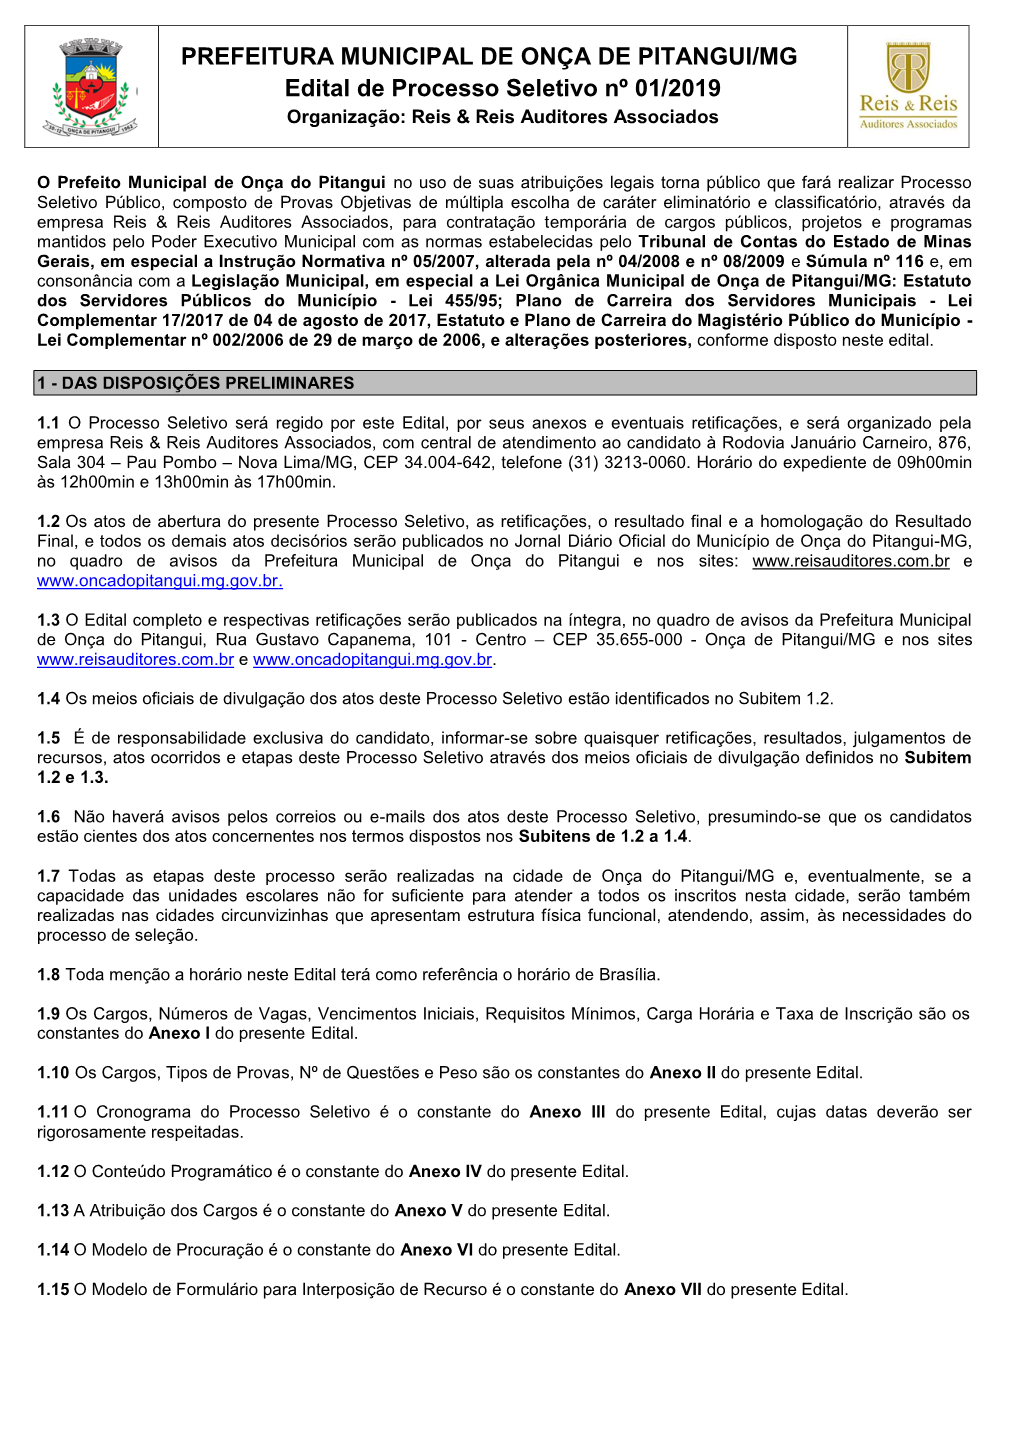 PREFEITURA MUNICIPAL DE ONÇA DE PITANGUI/MG Edital De Processo Seletivo Nº 01/2019 Organização: Reis & Reis Auditores Associados